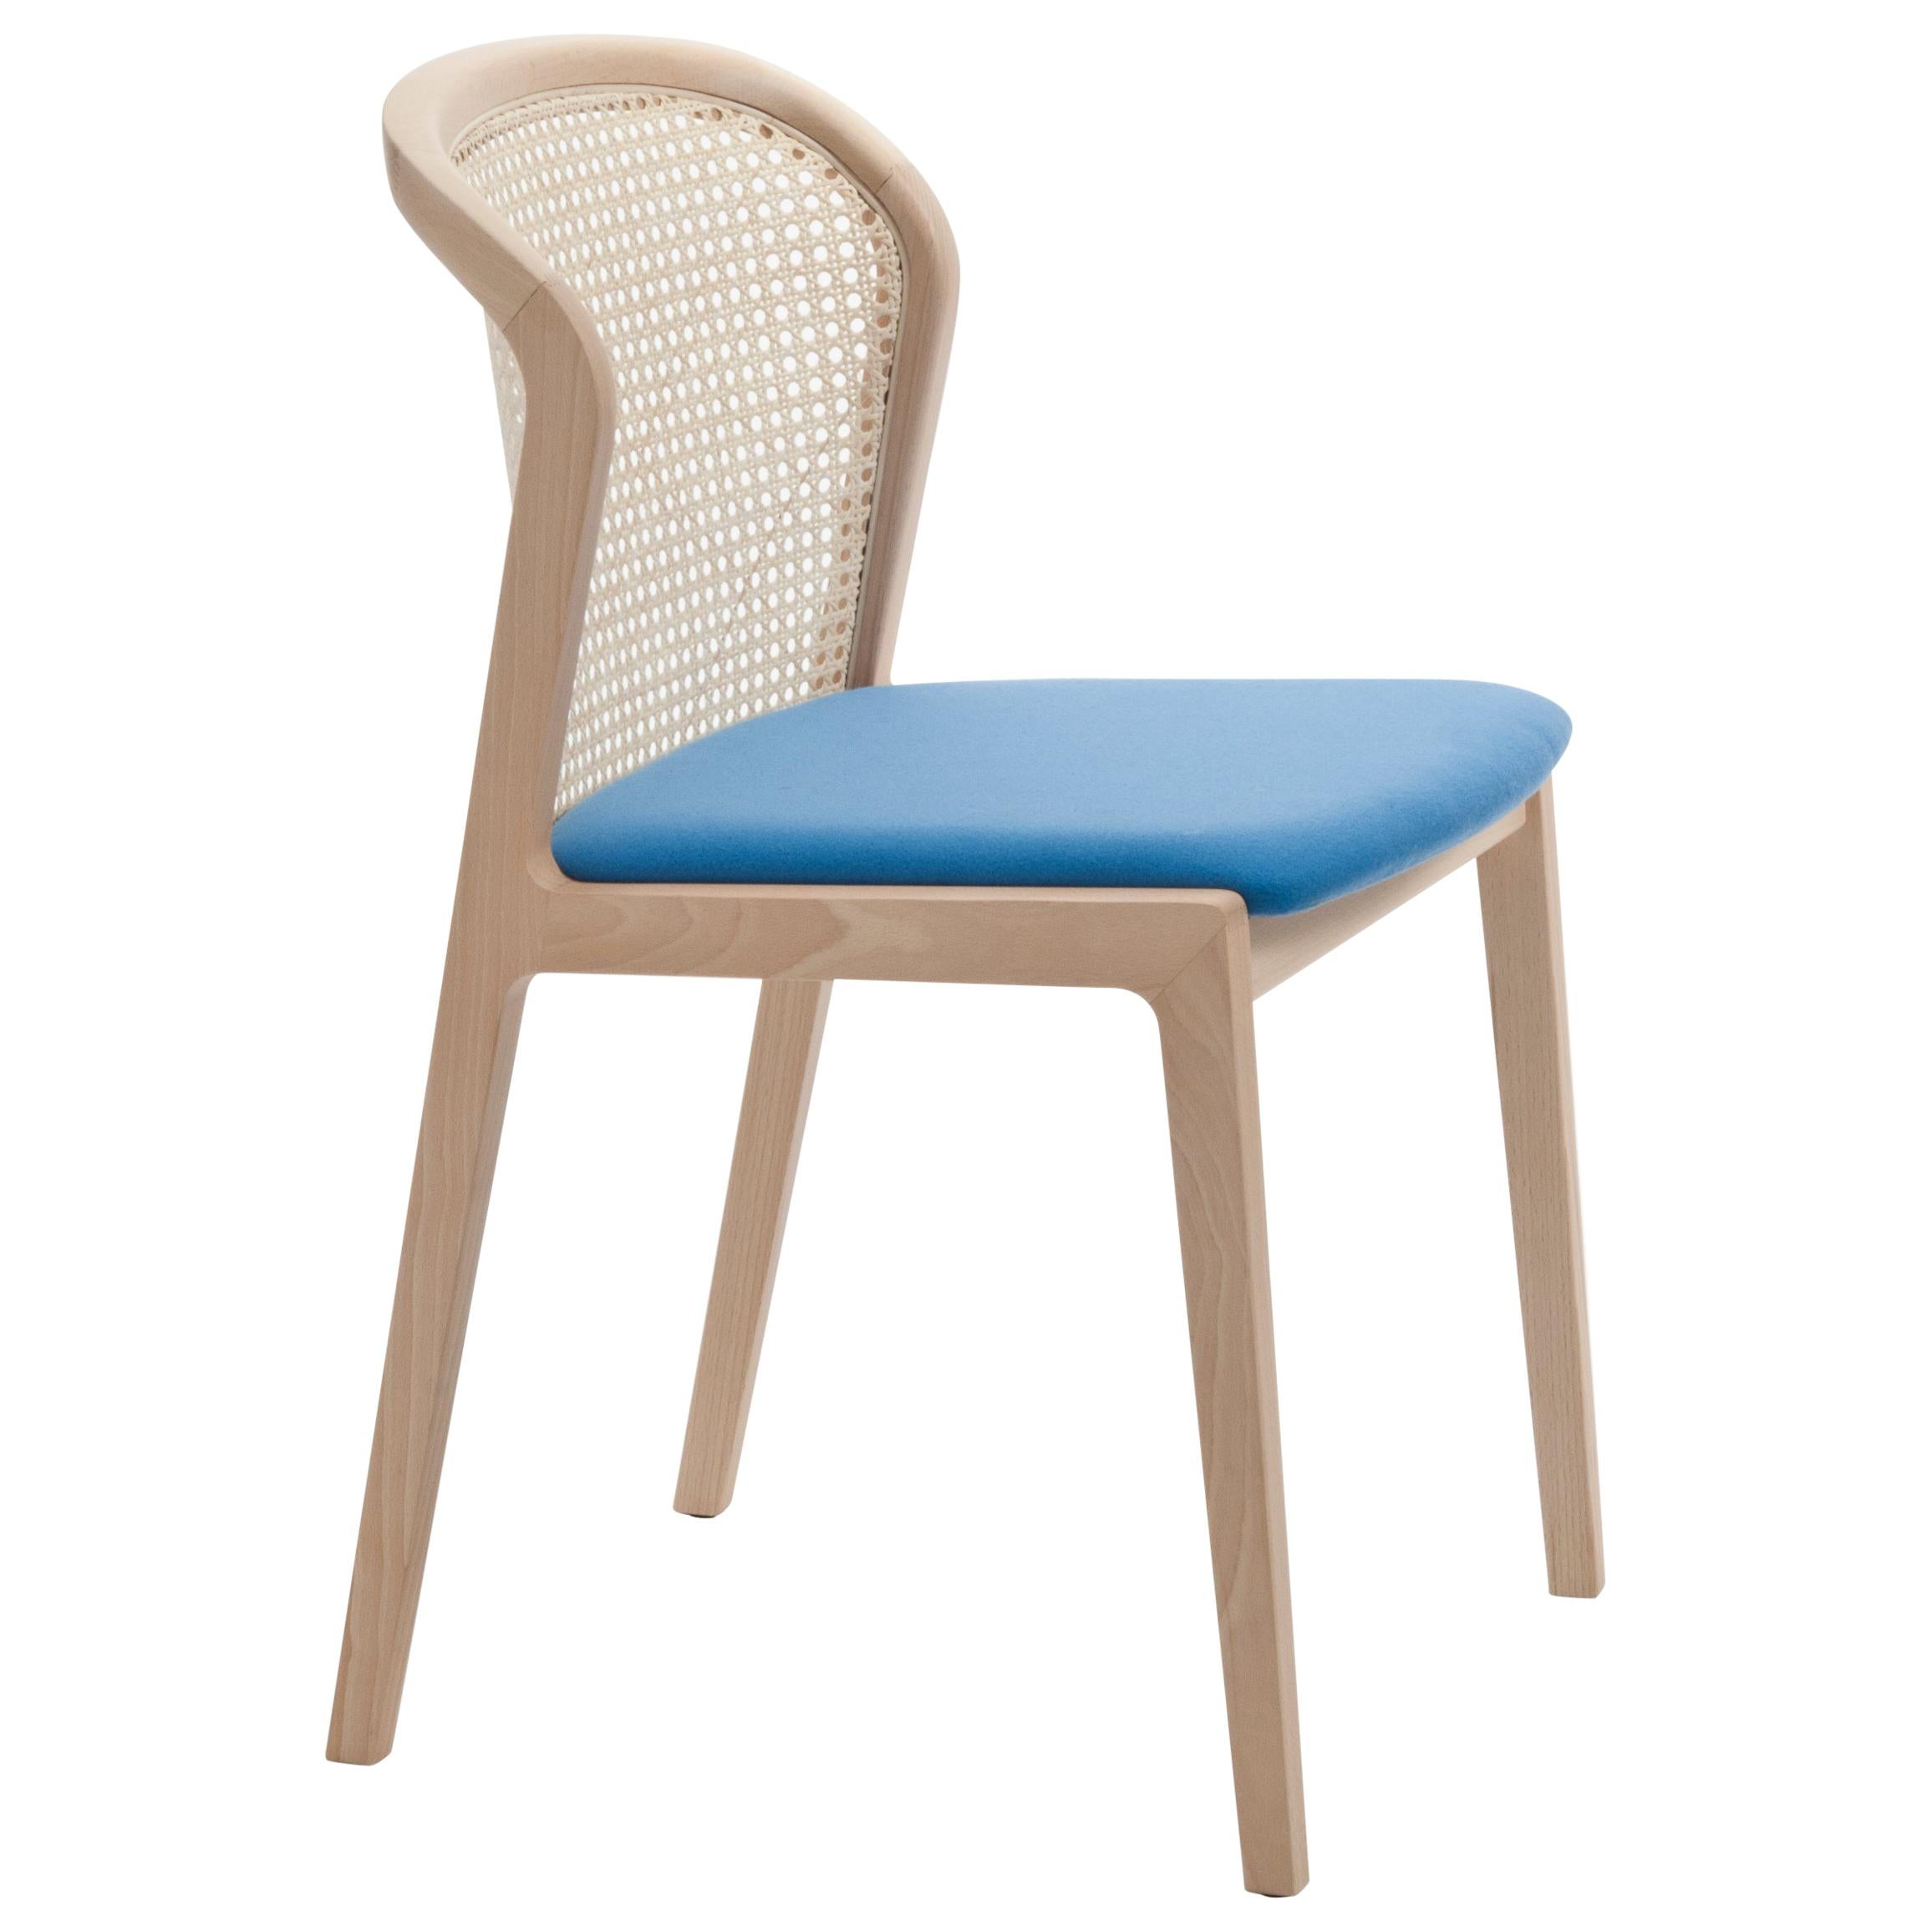 Wiener Stuhl Vienna von Col, Modernes Design aus Holz und Stroh, gepolsterter Sitz mit Azure-Muster